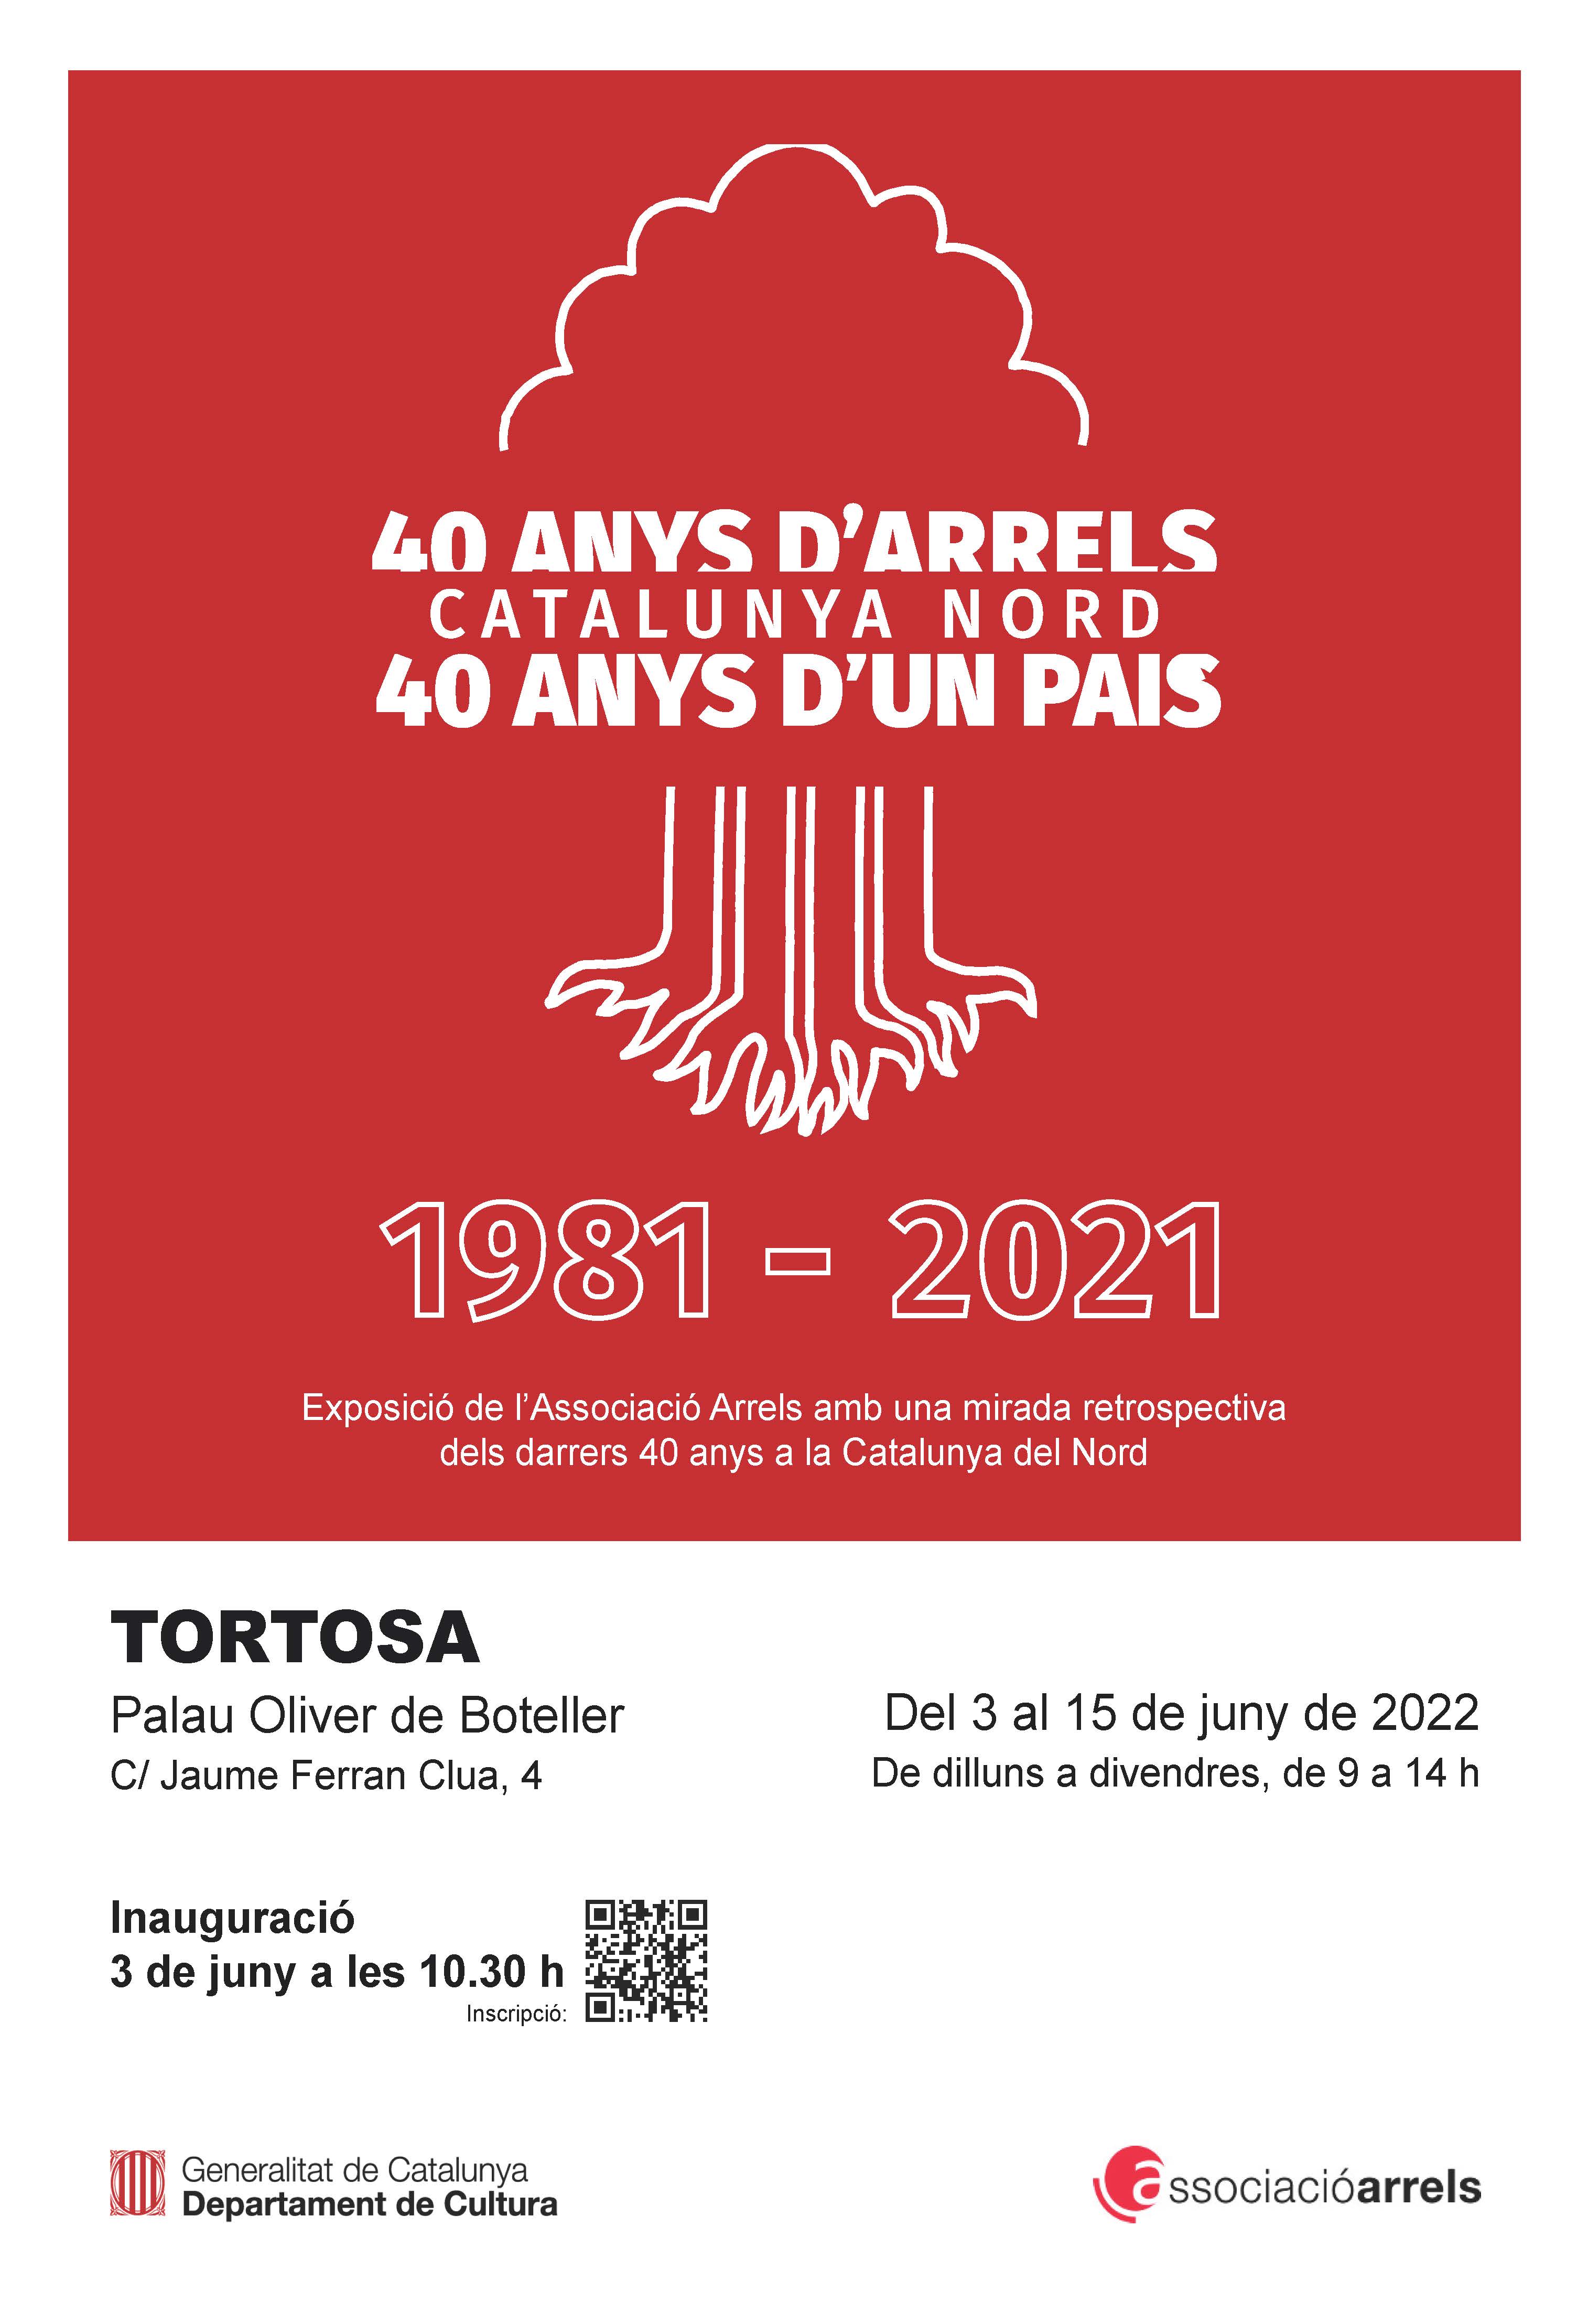 Exposició 'Catalunya Nord. 40 anys d'Arrels, 40 anys d'un país' a les Terres de l'Ebre